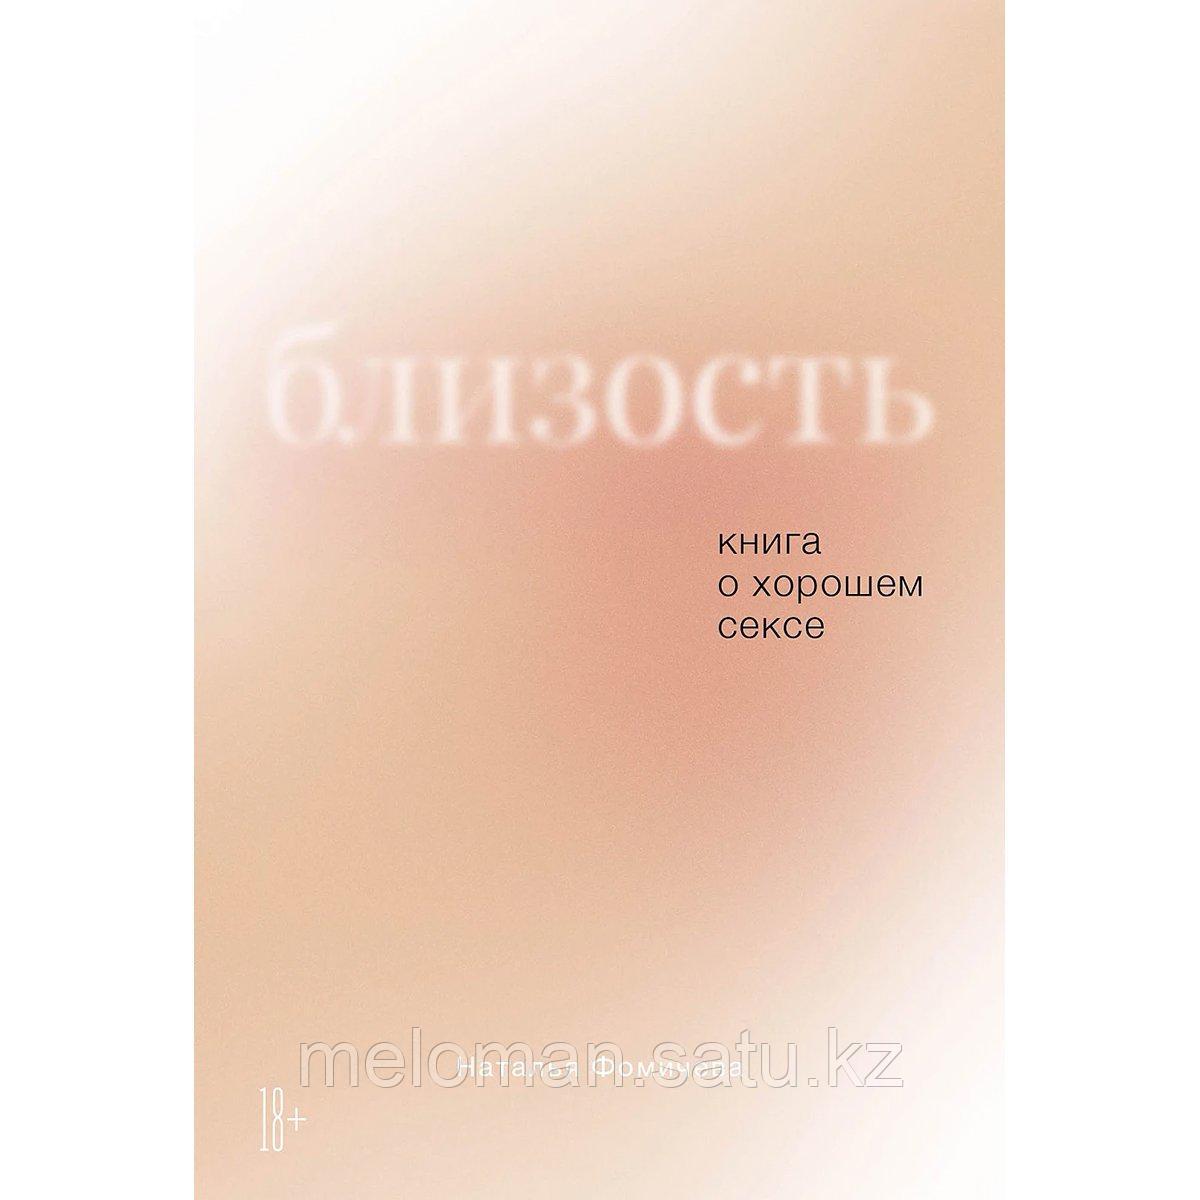 Фомичева Н.: Близость: Книга о хорошем сексе